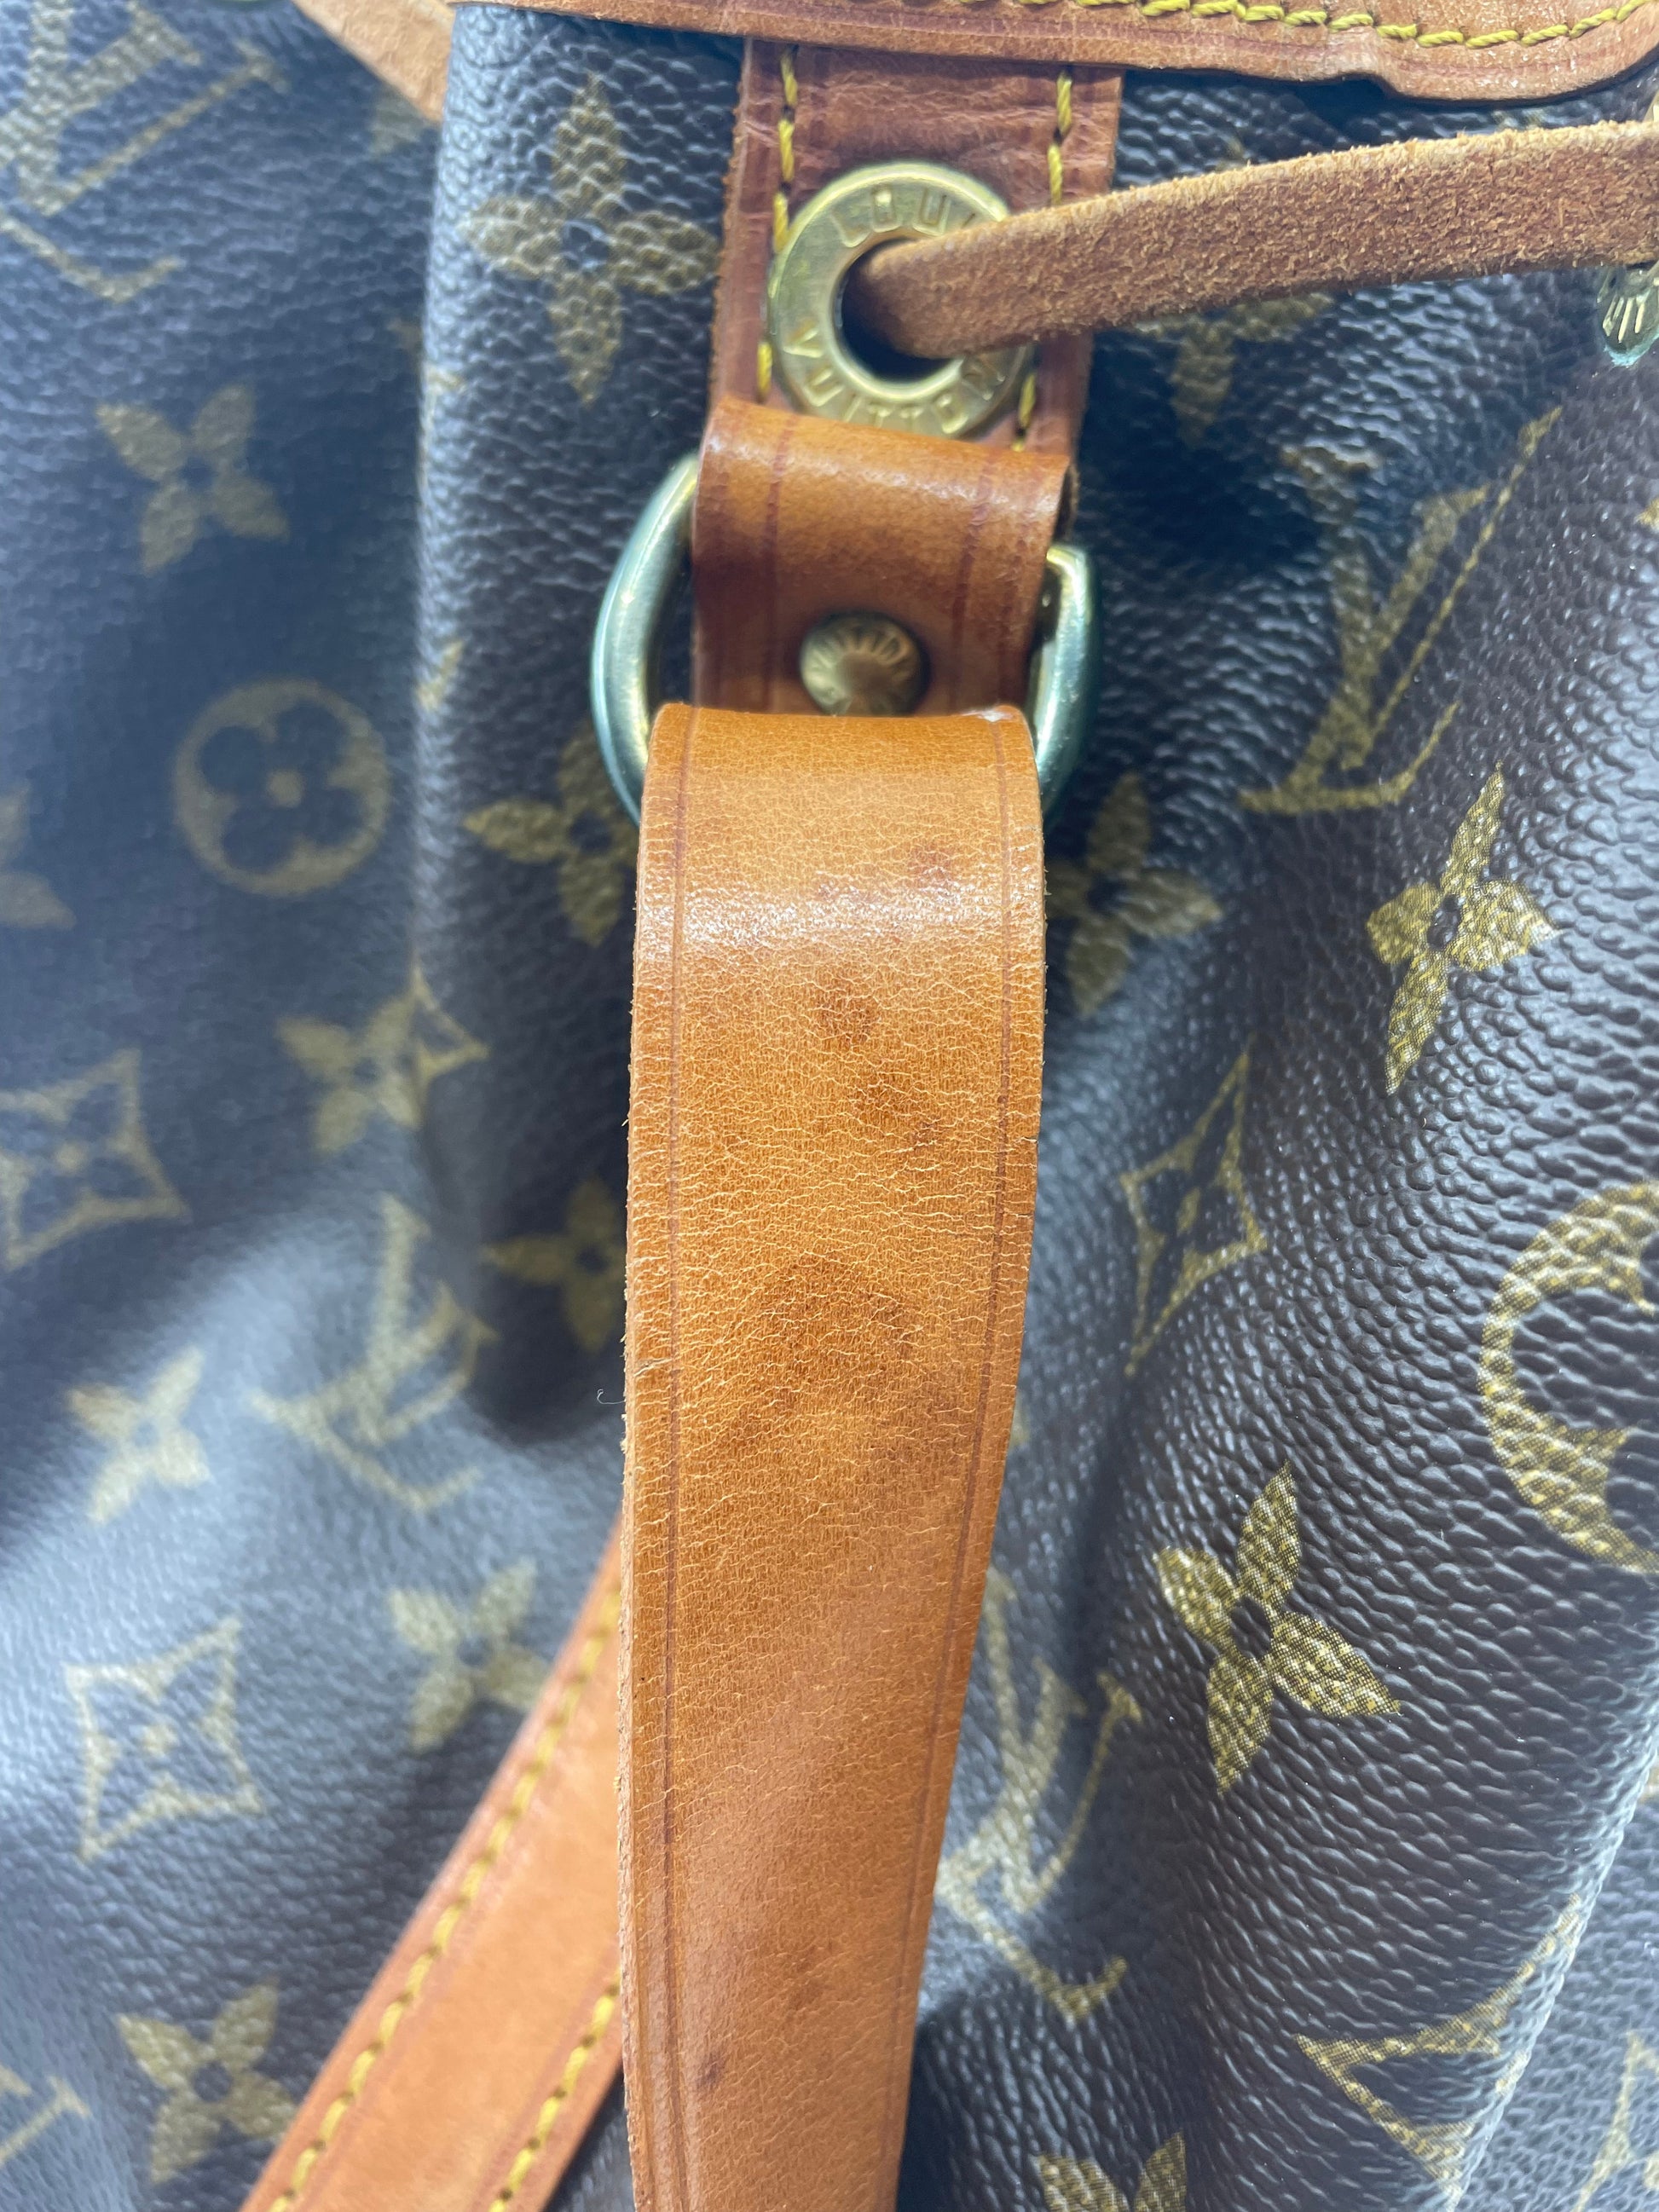 How to spot a fake Louis Vuitton Bag - Collecting Louis Vuitton 